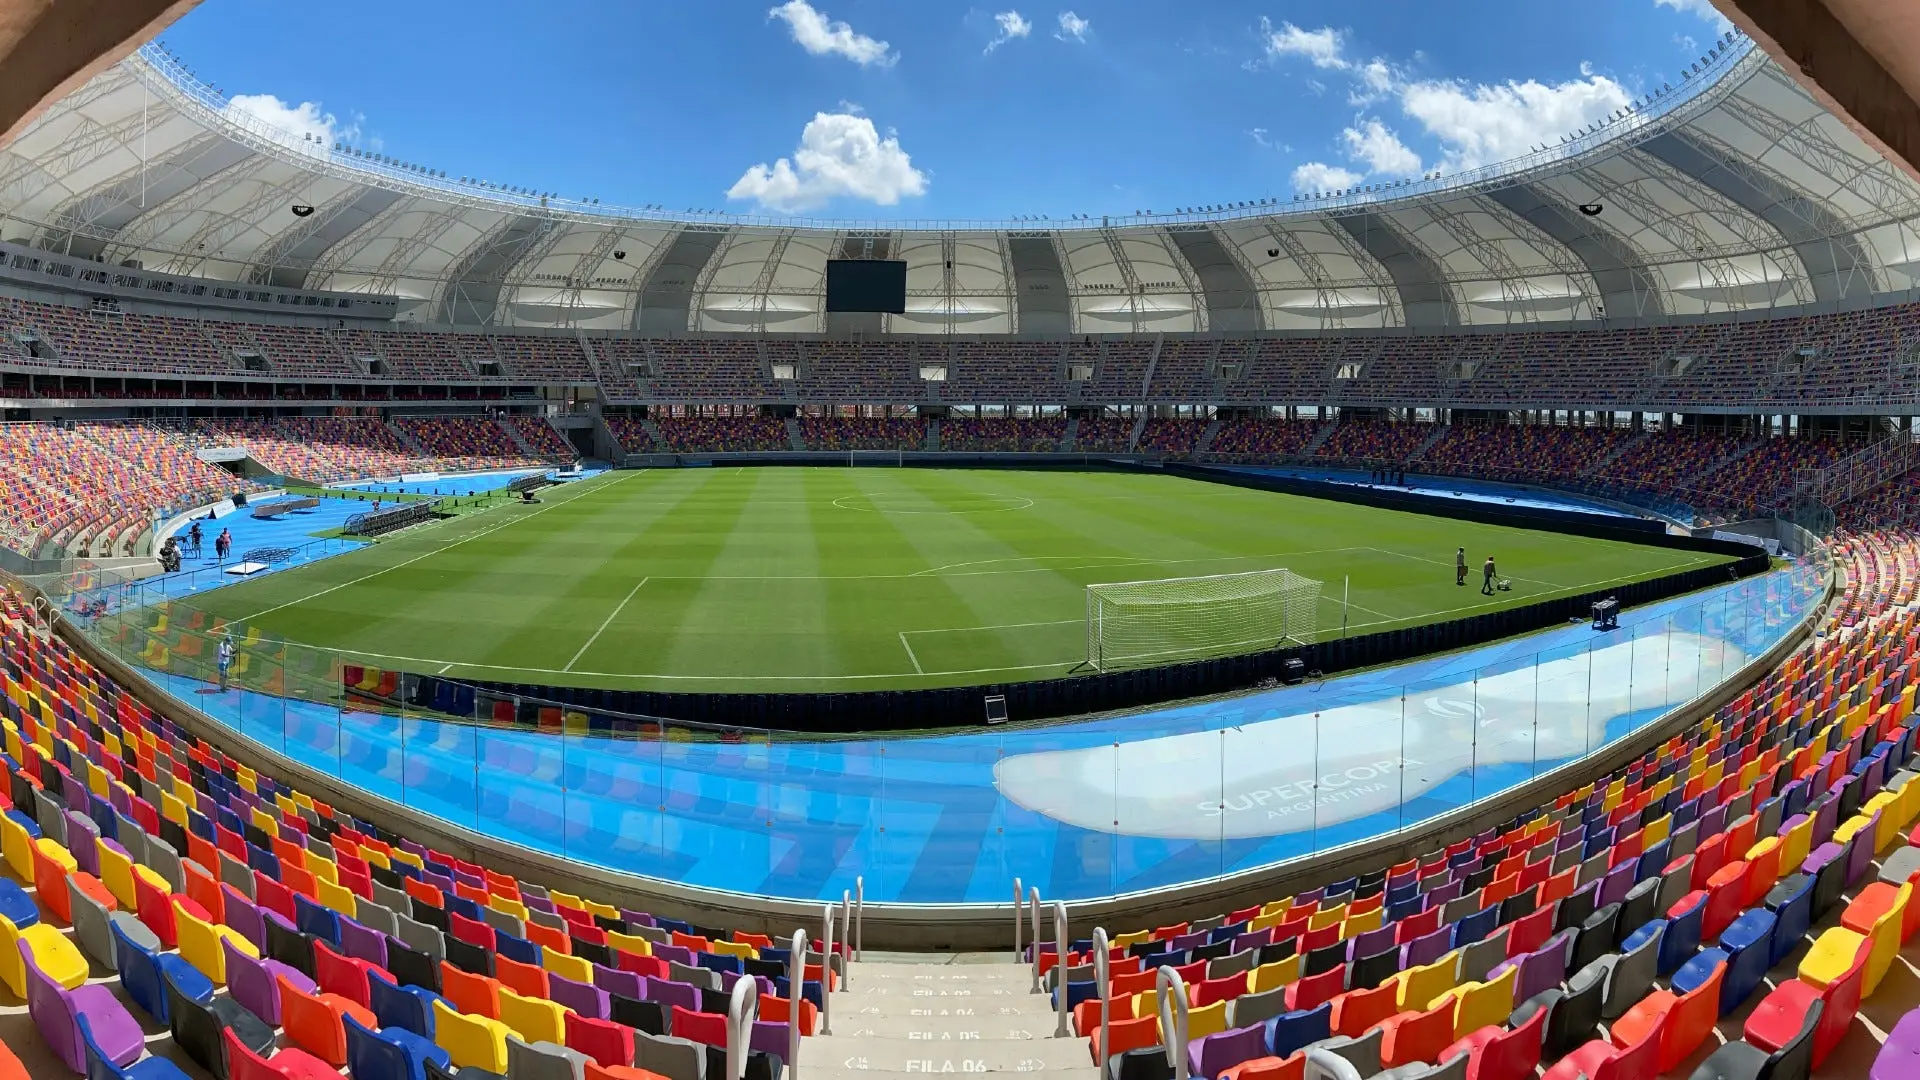 capacidad del estadio donde juega argentina hoy - Cuál es el estadio de Argentina con más capacidad